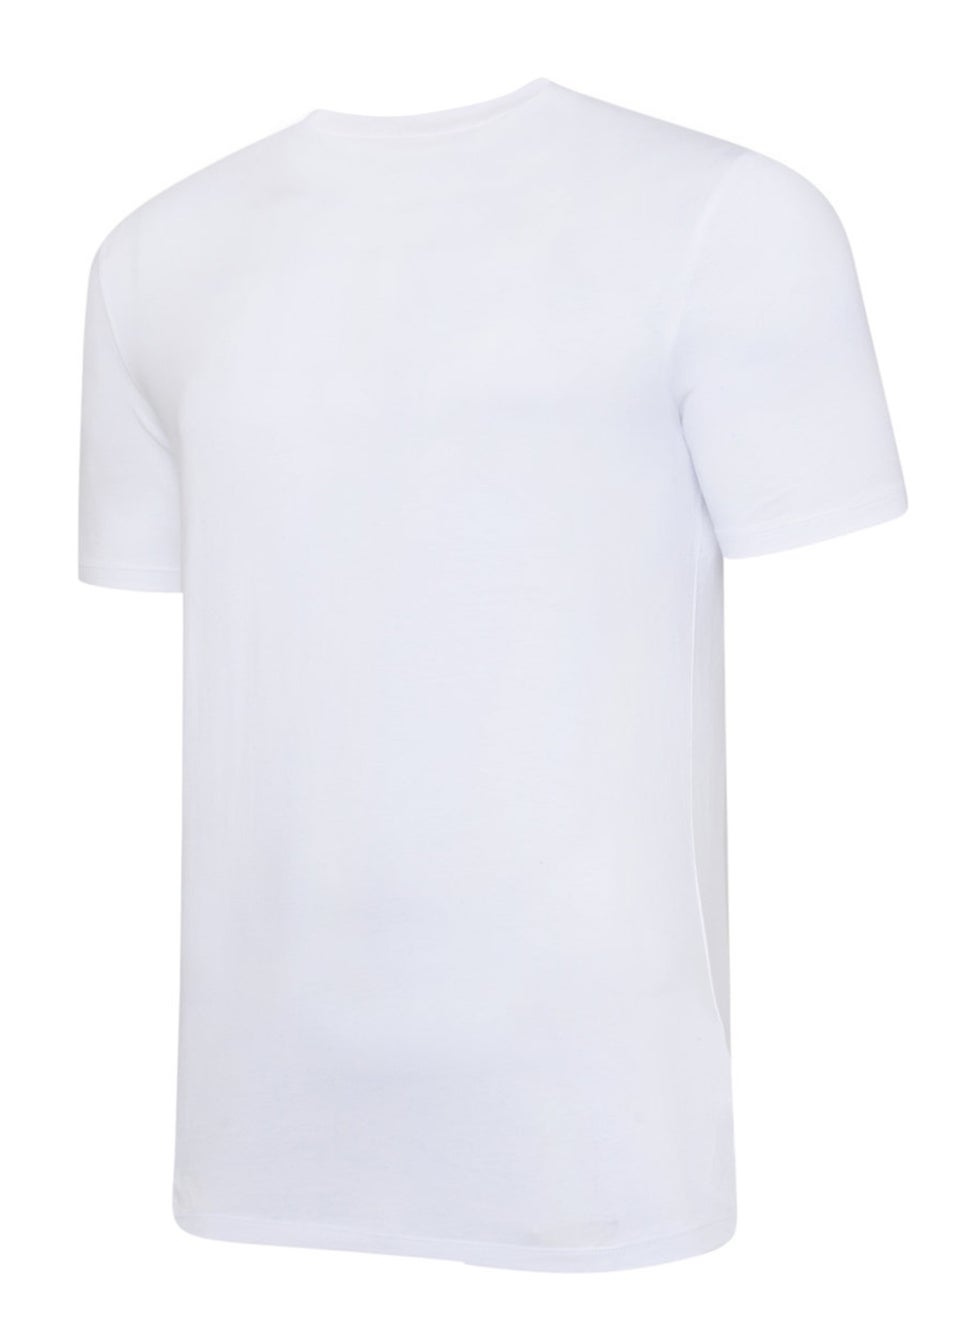 Umbro White/Black Club Leisure T-Shirt